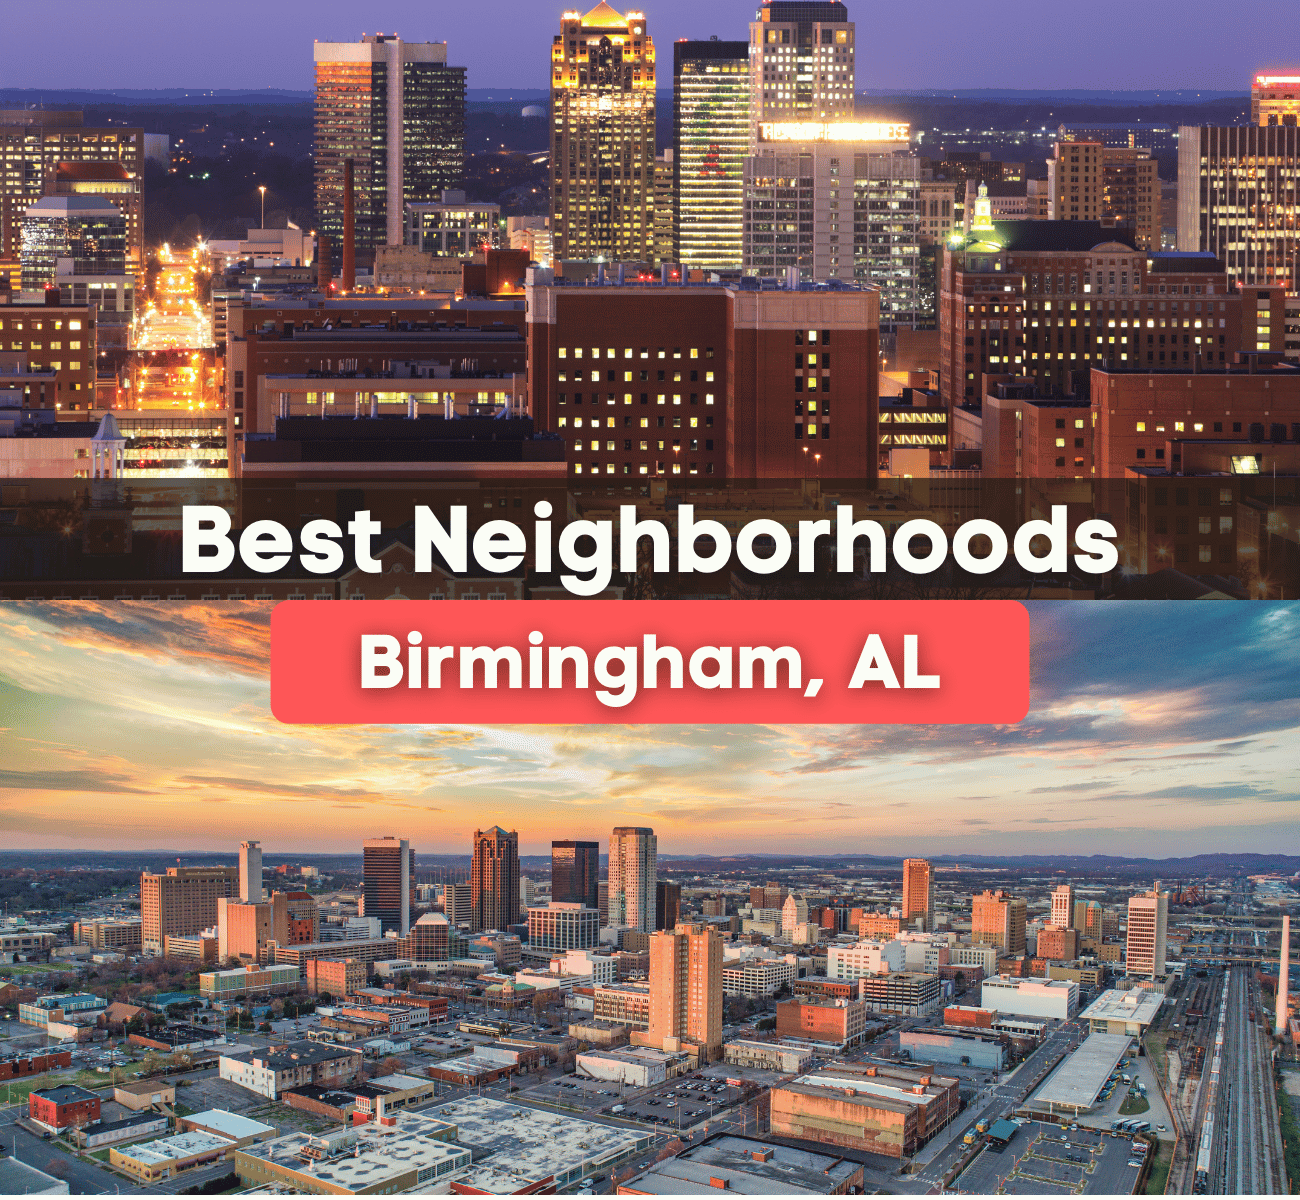 best neighborhoods in Birmingham, AL graphic with skyline of Birmingham